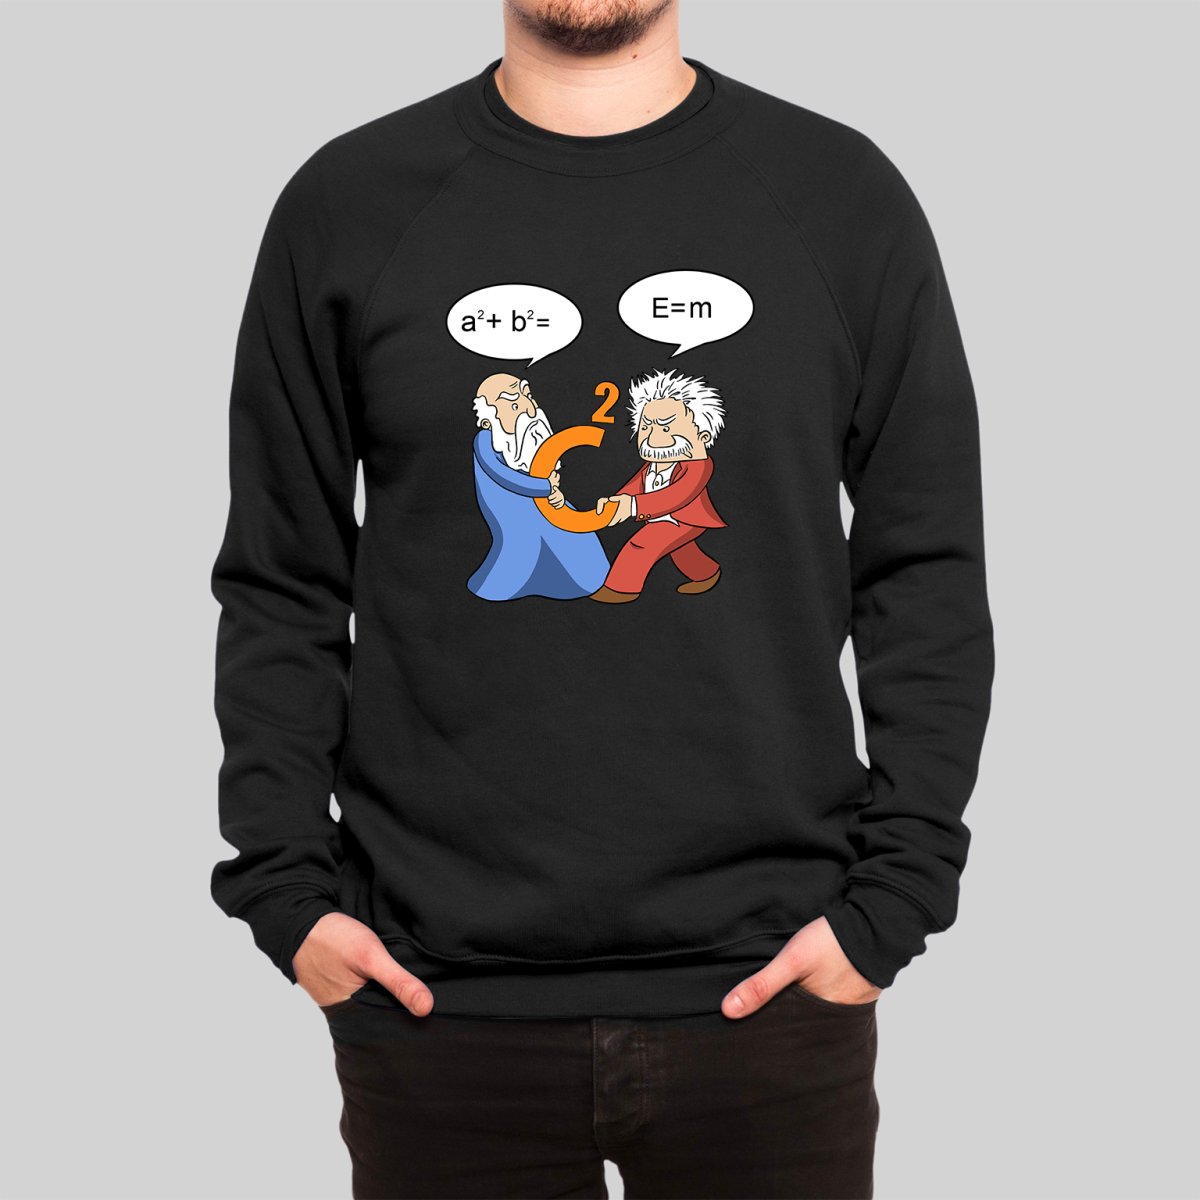 Funny Scientist Sweatshirt - Geeksoutfit